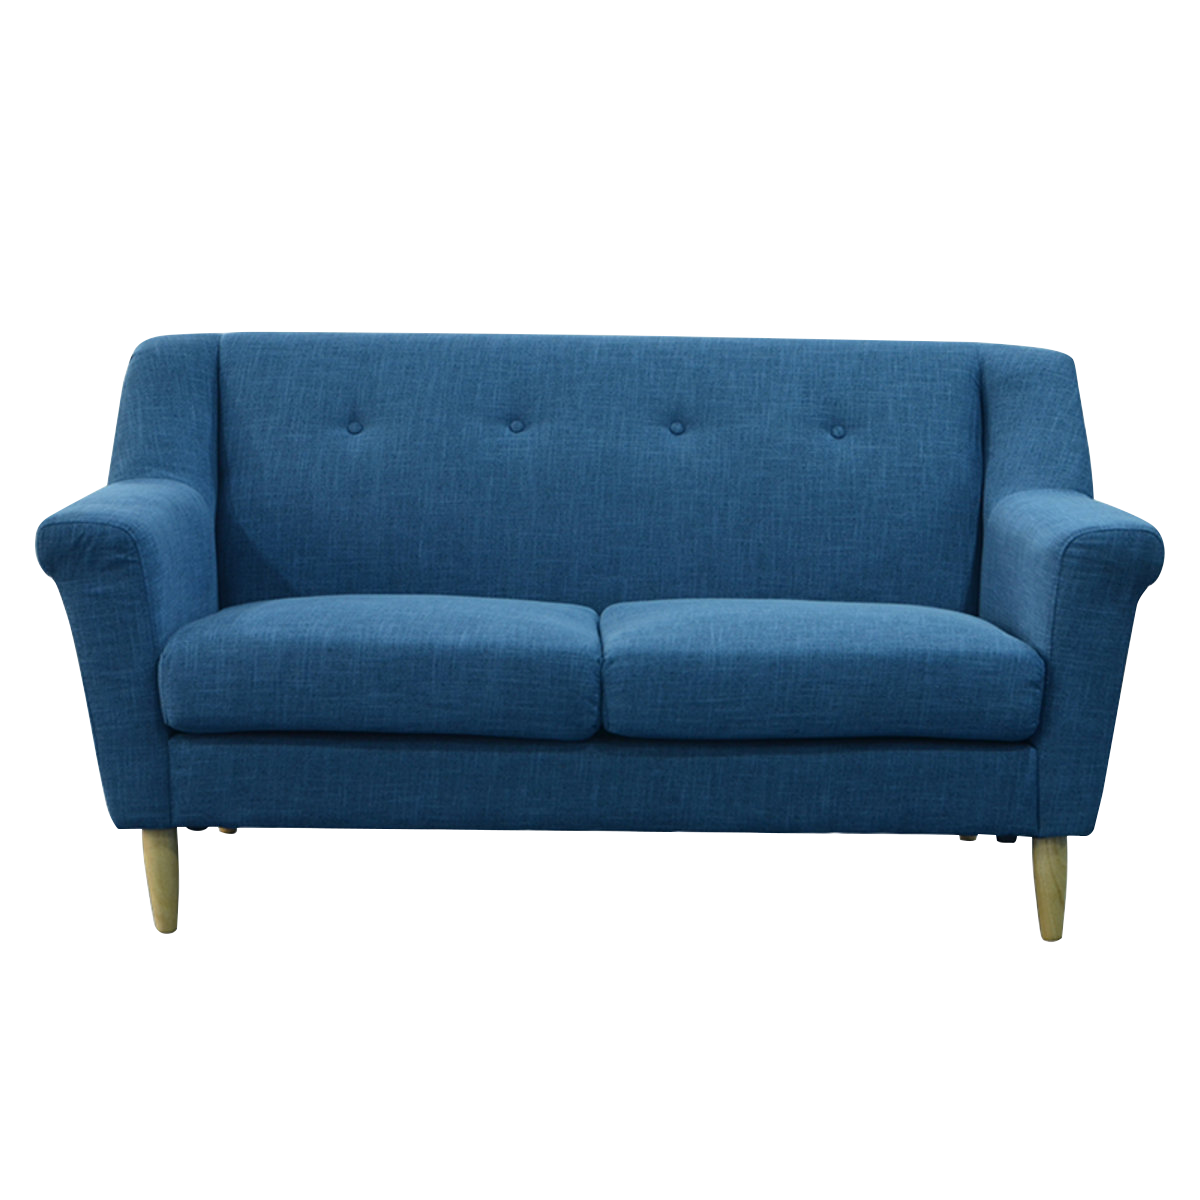 MerryRabbit – 歐式布藝沙發 MR-9018 雙人位 Fabric sofa 2 seater